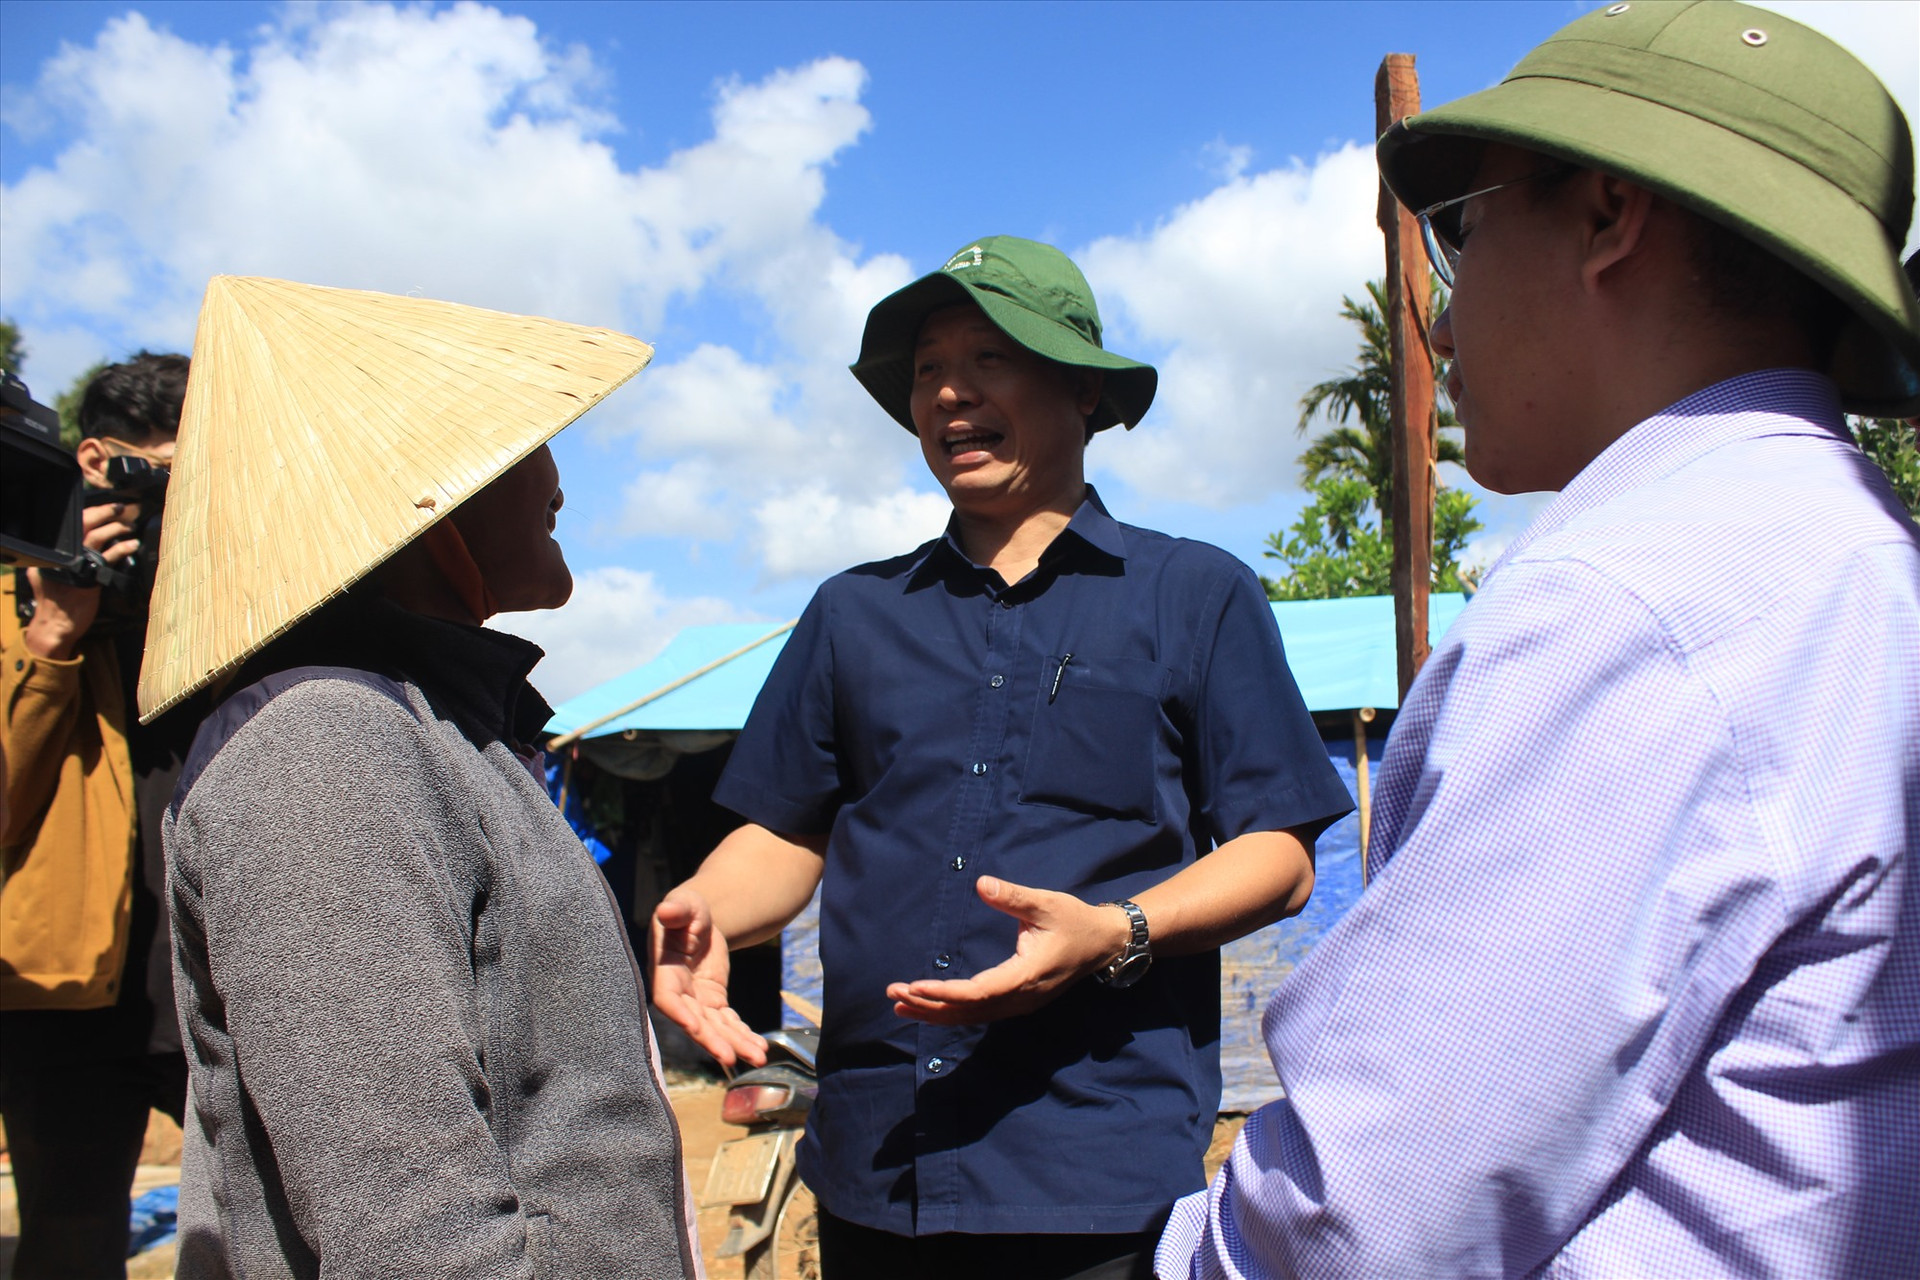 Phó Chủ tịch UBND tỉnh Hồ Quang Bửu trò chuyện cùng một hộ dân sắp sửa dọn vào nơi ở mới nhờ nguồn hỗ trợ của Nhà nước. Ảnh: T.C